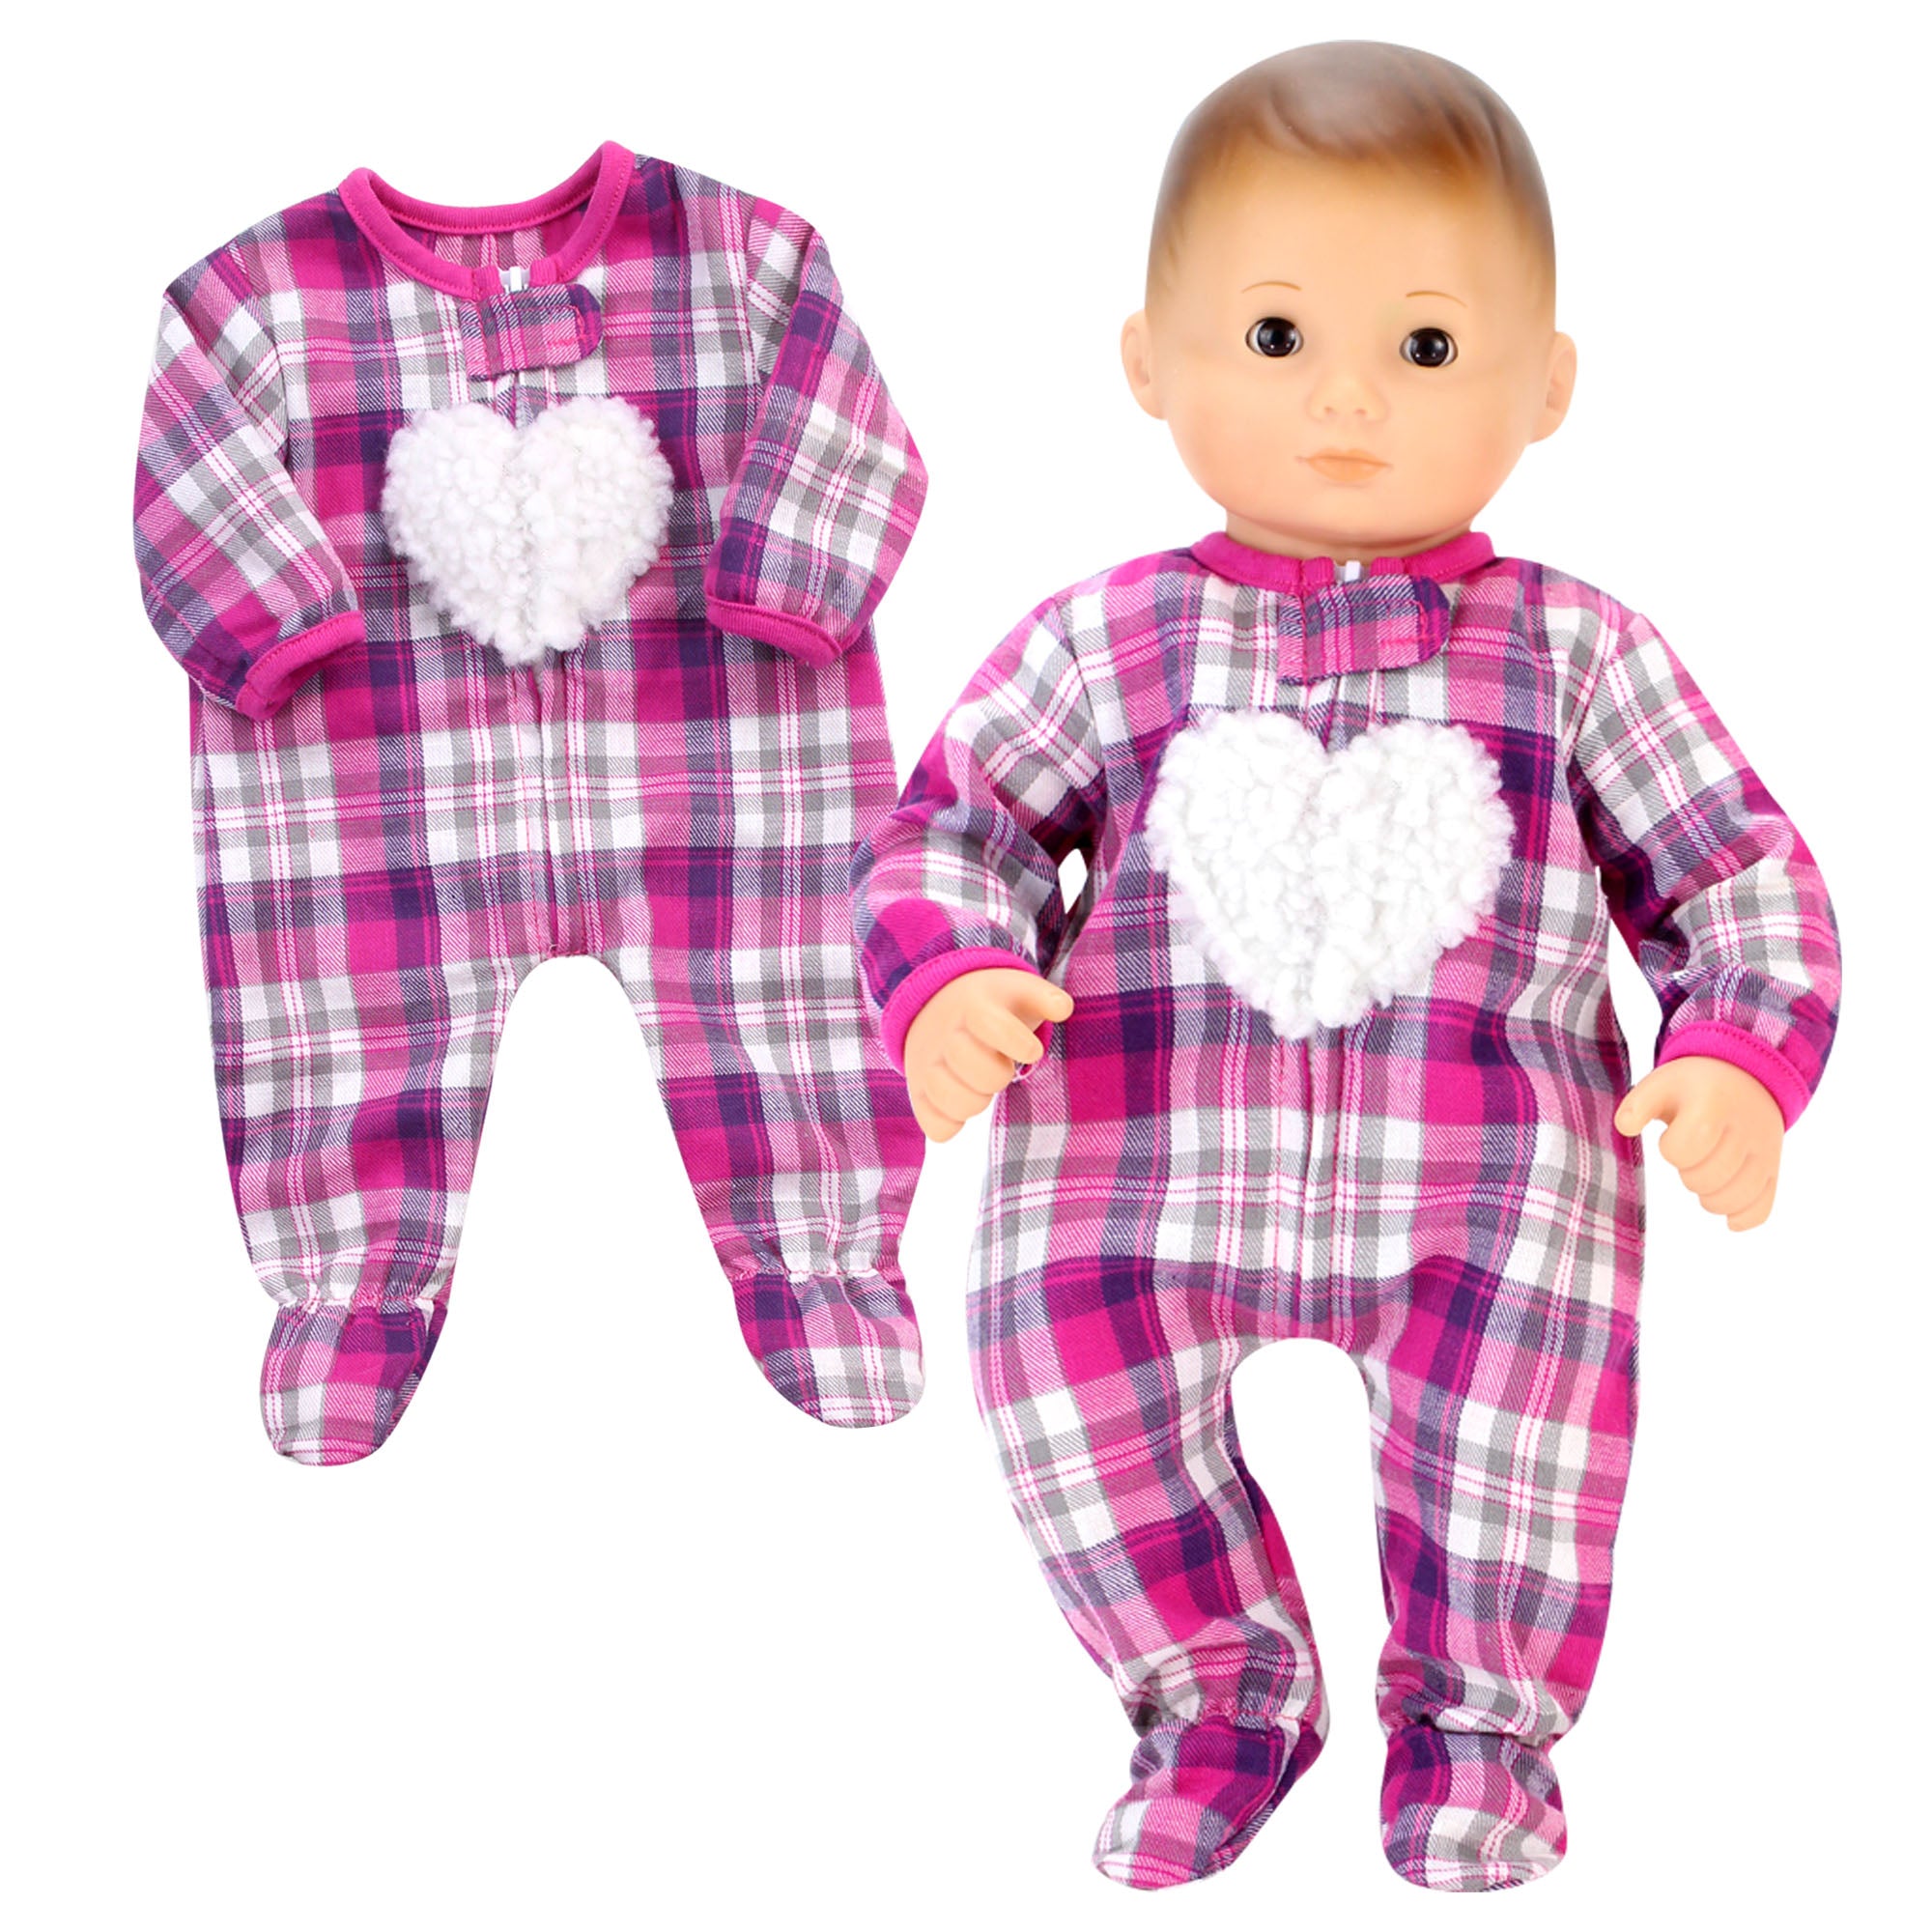 Sophia's - 15" Doll - Flannel Sleeper w/ Heart - Hot Pink